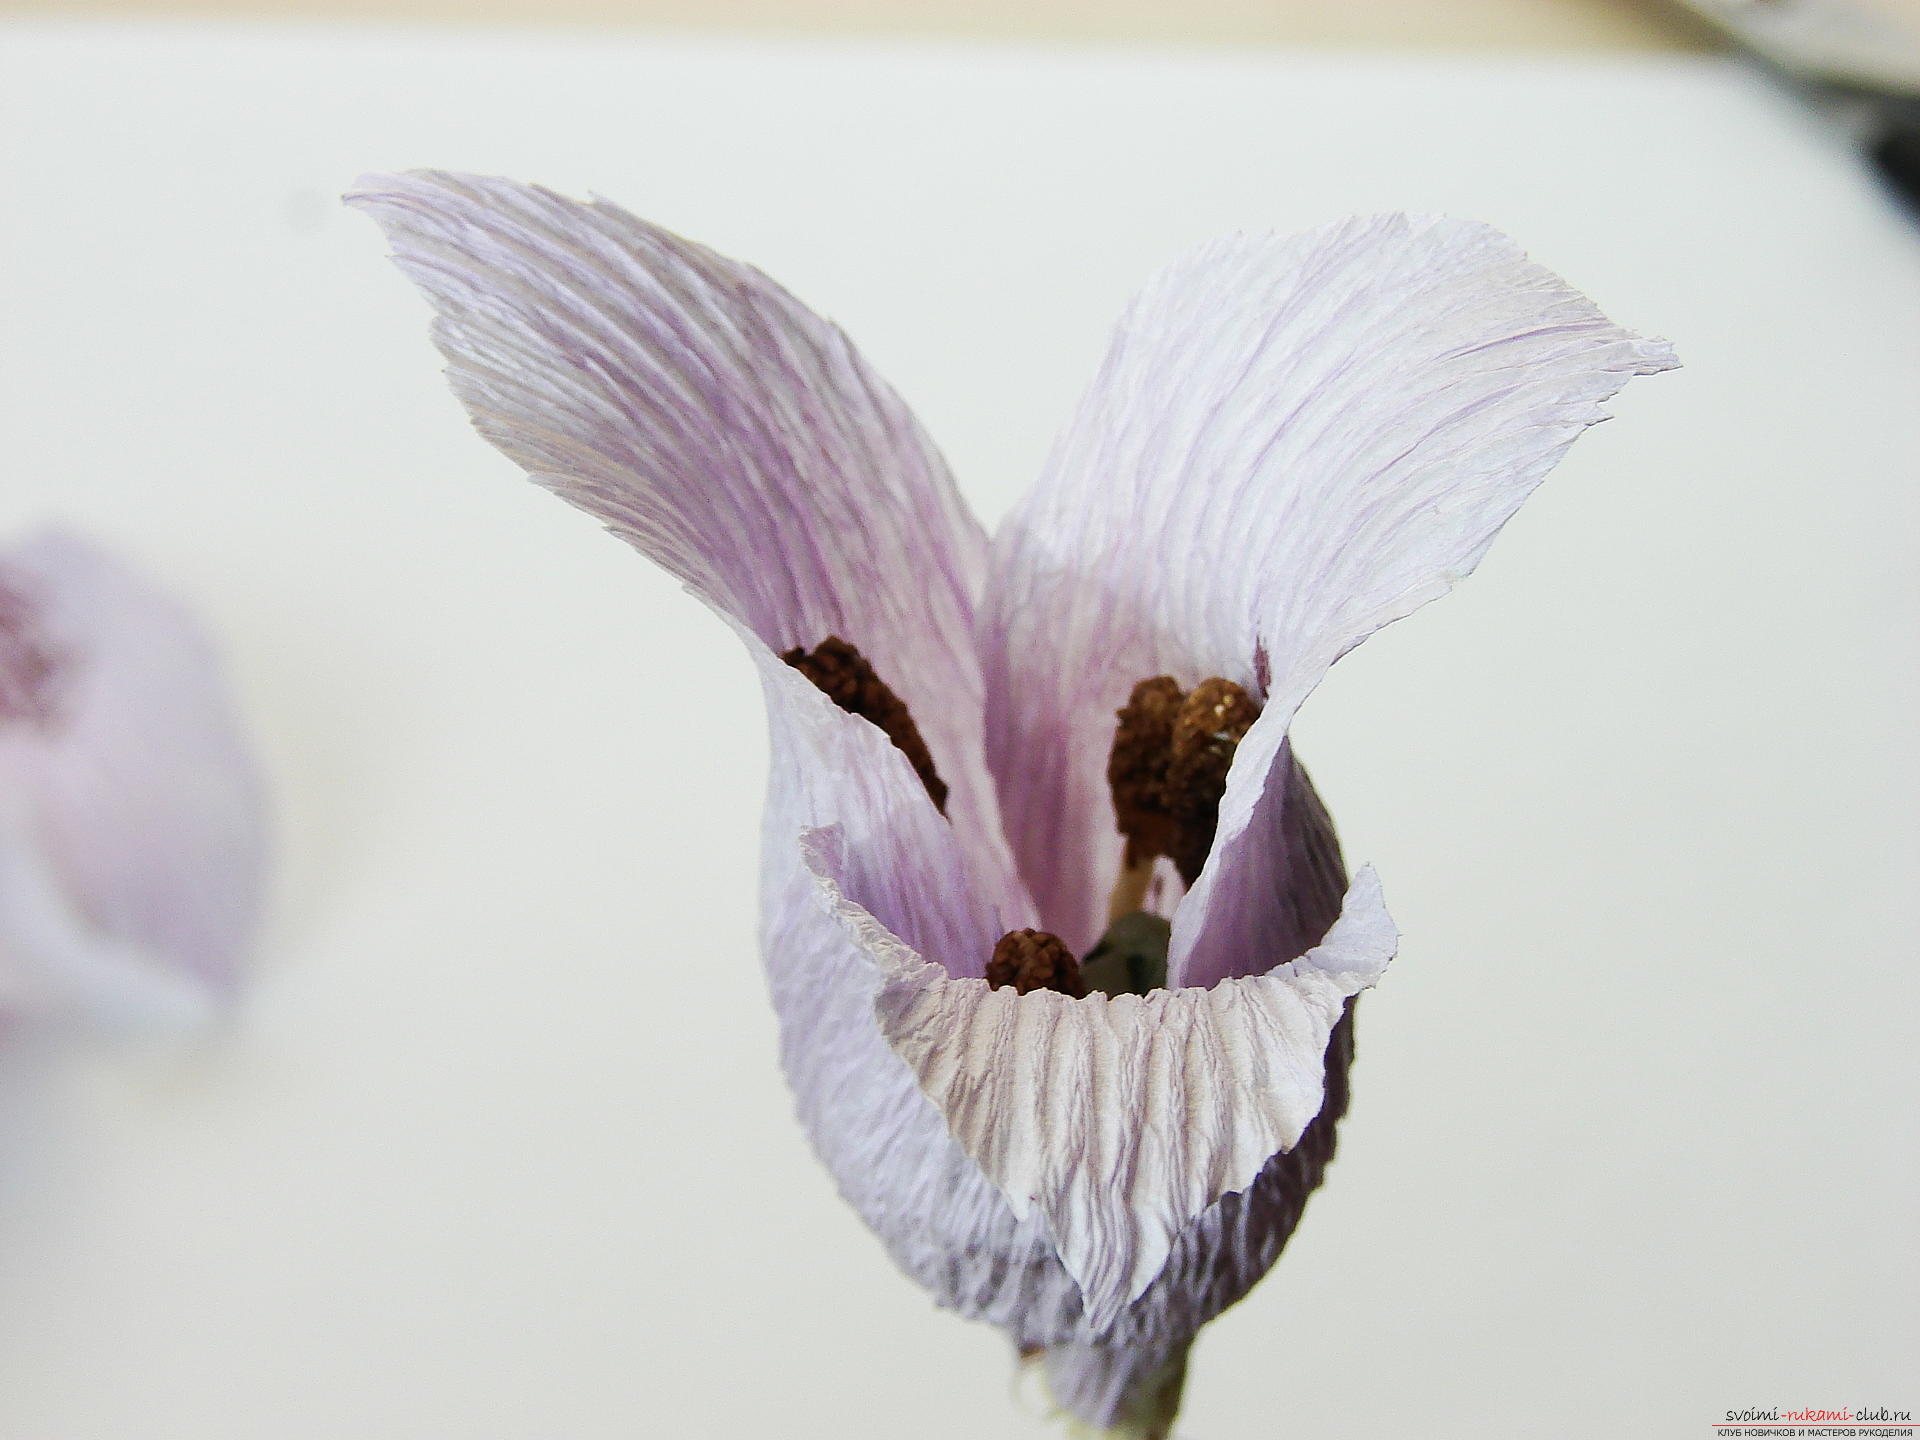 Мастер-класс научит как сделать гофрированные цветы своими руками – лилии из гофрированной бумаги.. Фото №30